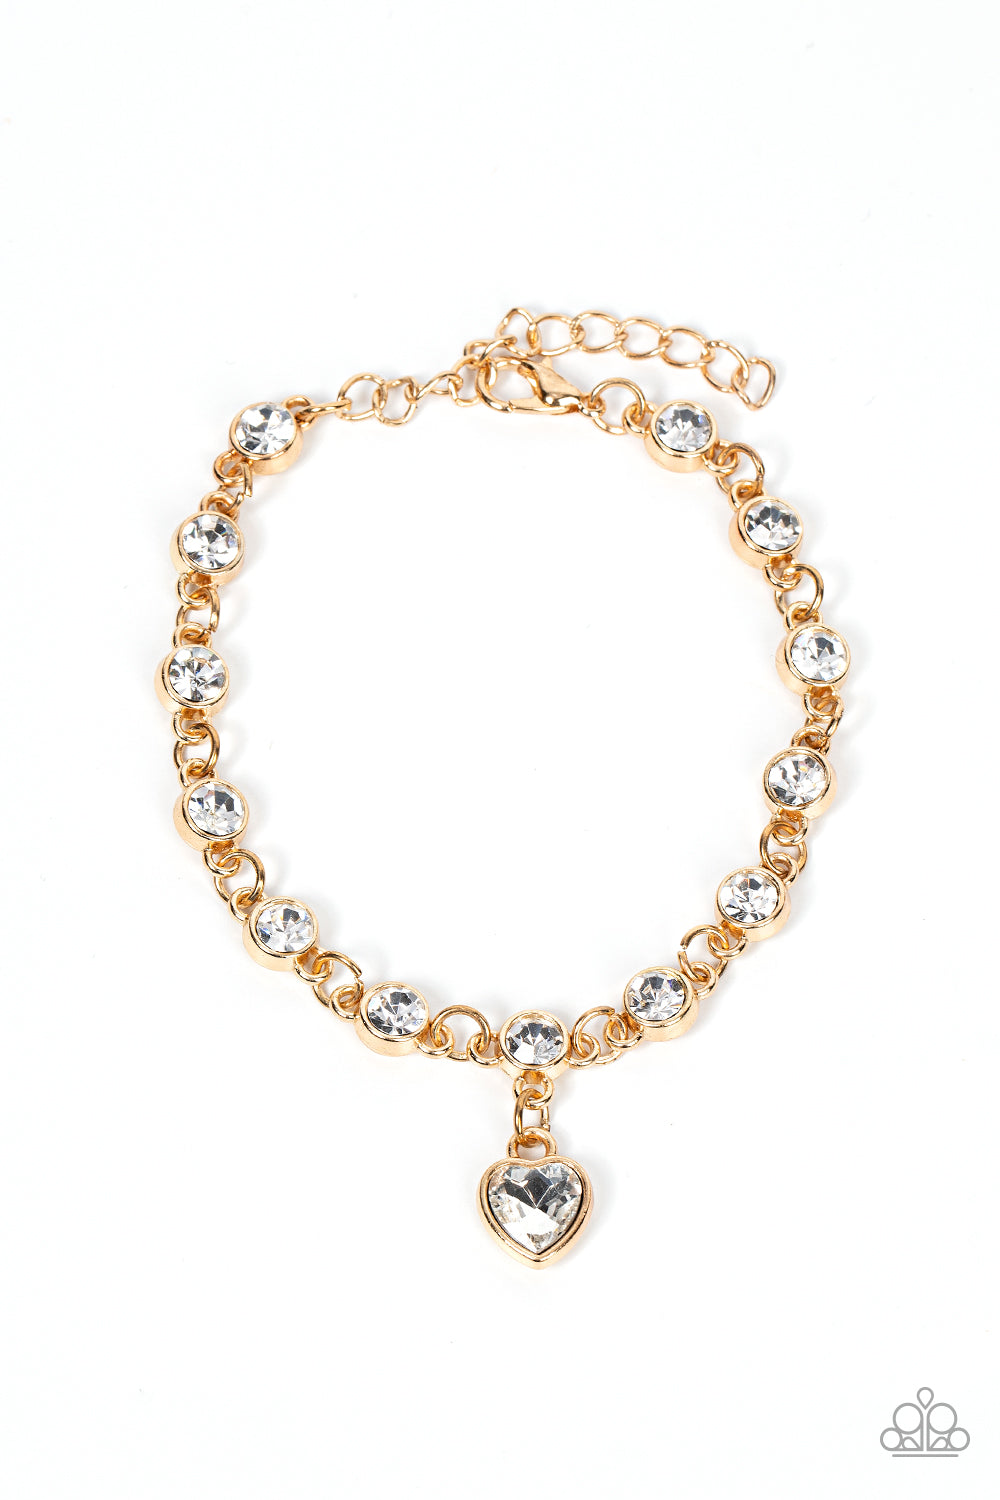 Truly Lovely - Gold Bracelet - Princess Glam Shop